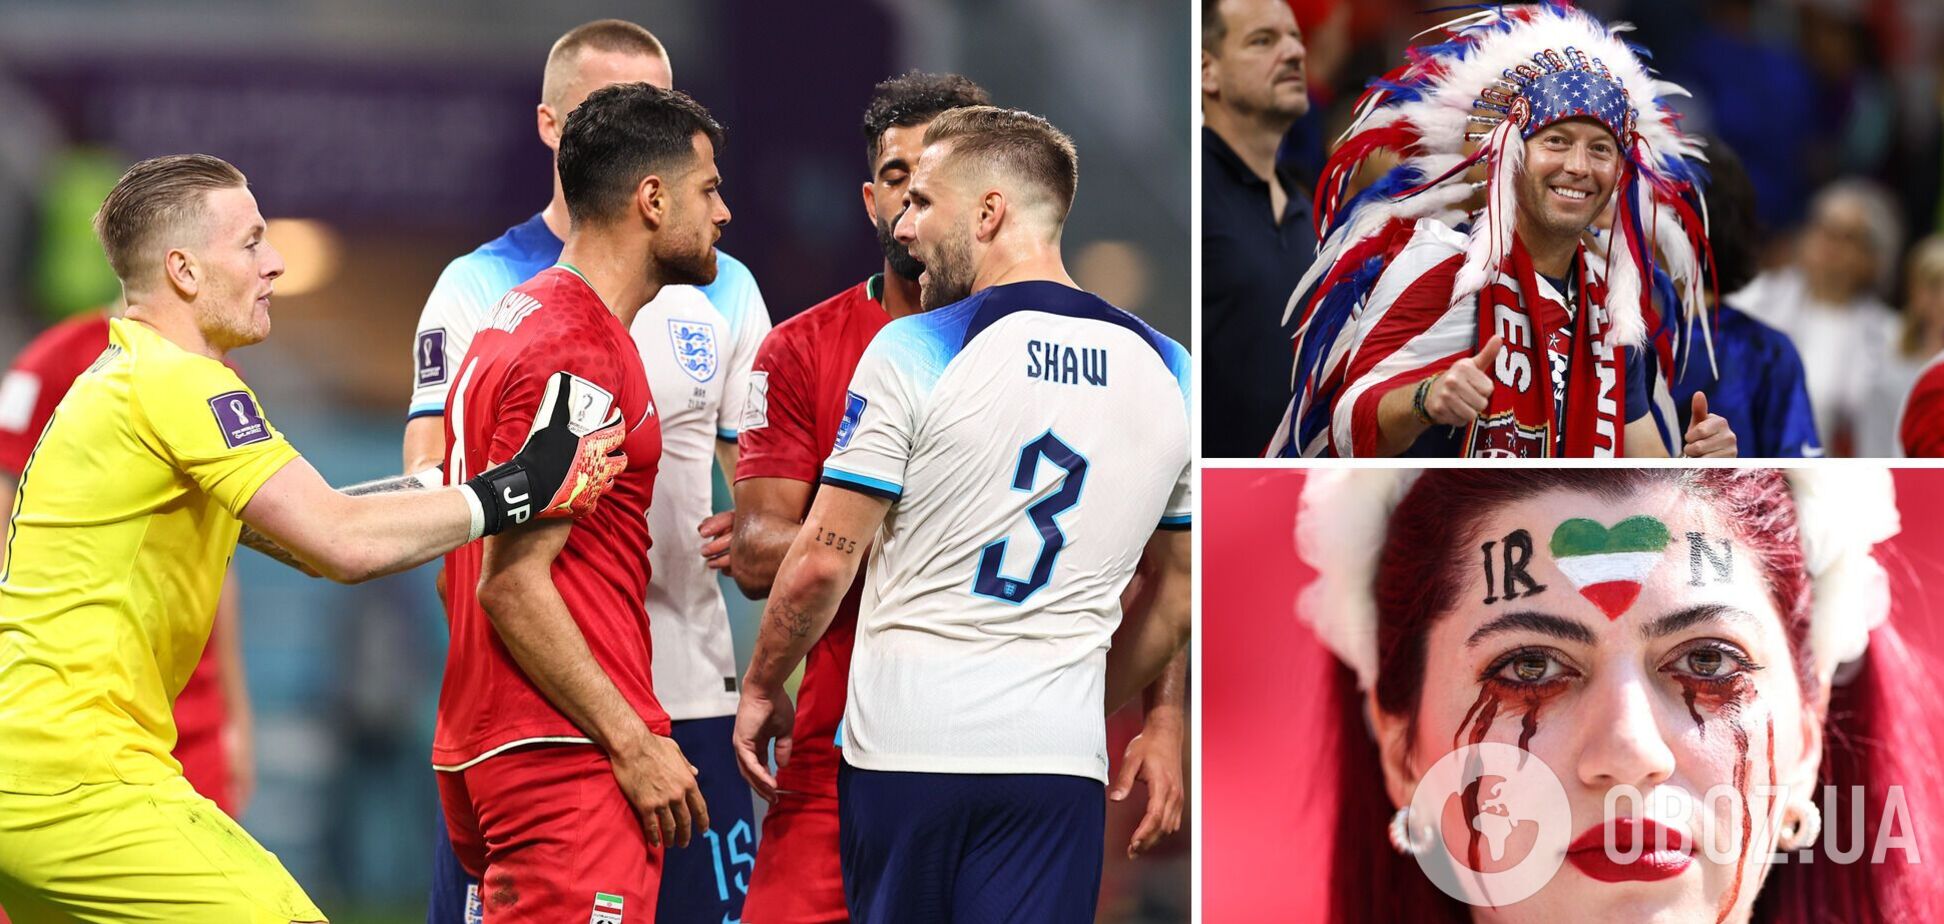 Битва за плей-офф на ЧМ-2022: Англия разгромила Уэльс, США отправили домой Иран. Результаты дня